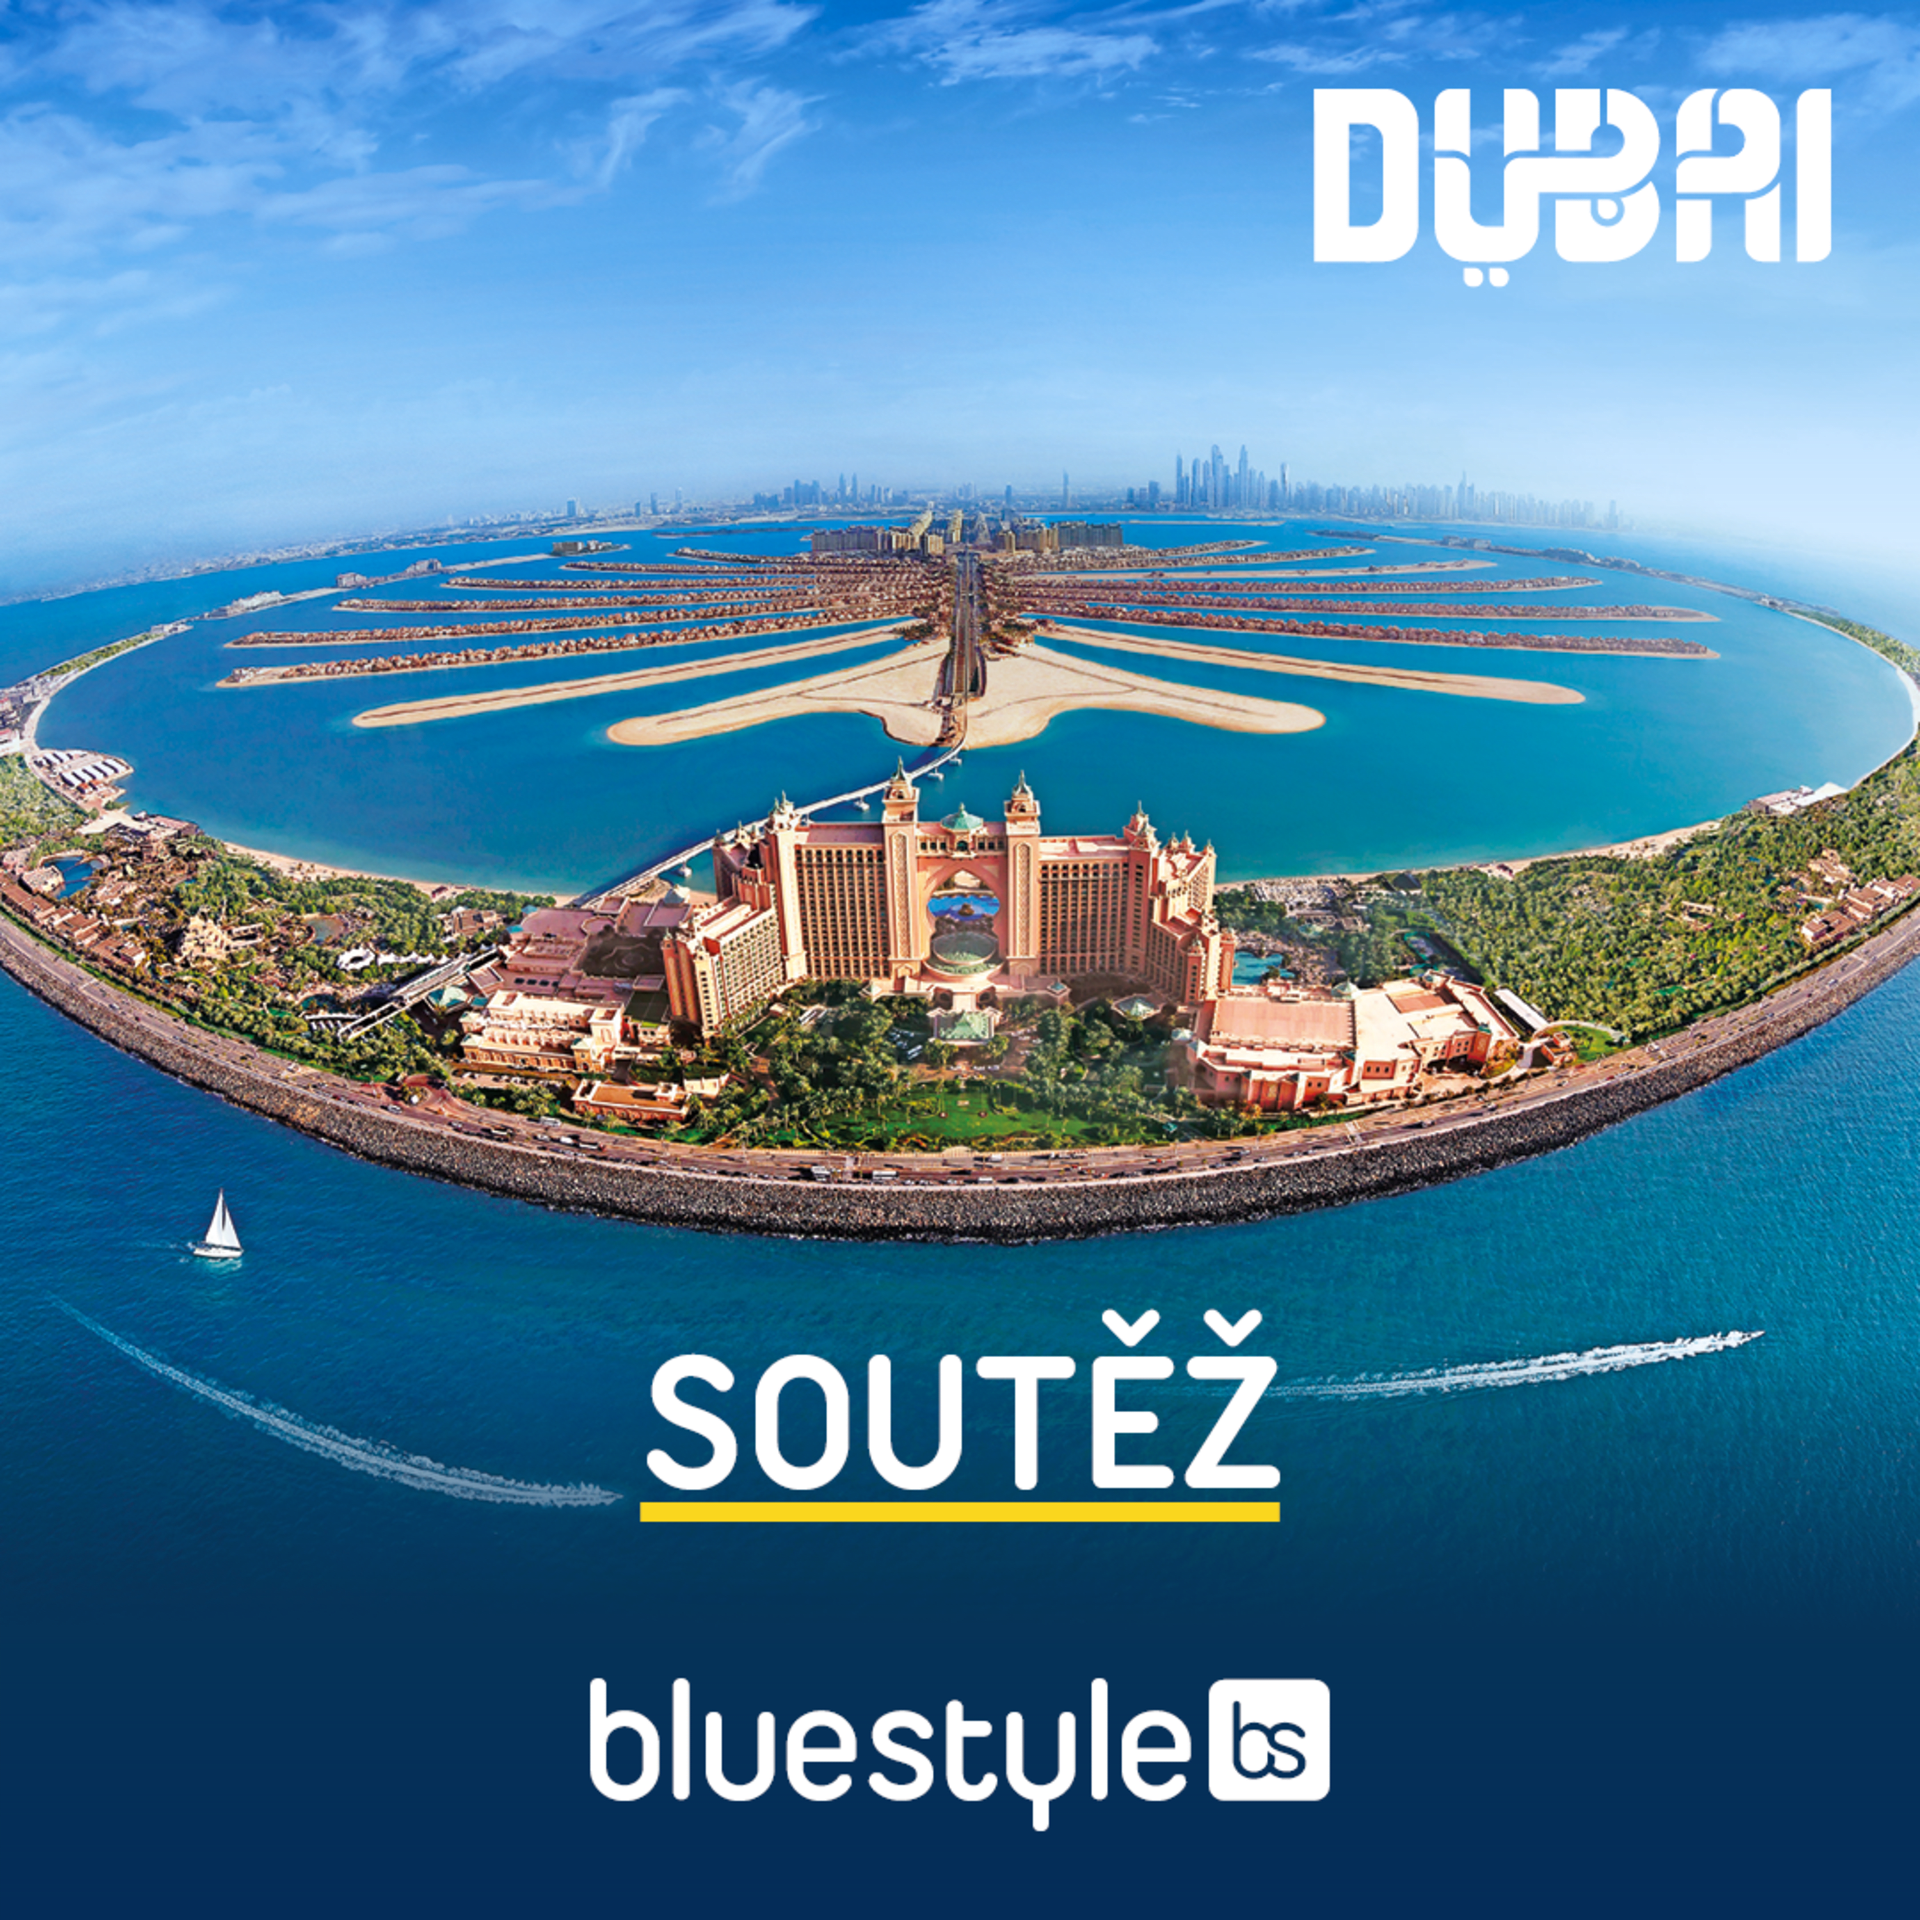 Vyhrajte poukaz na zájezd do Dubaje od společnosti CK Blue Style v hodnotě 9900 Kč